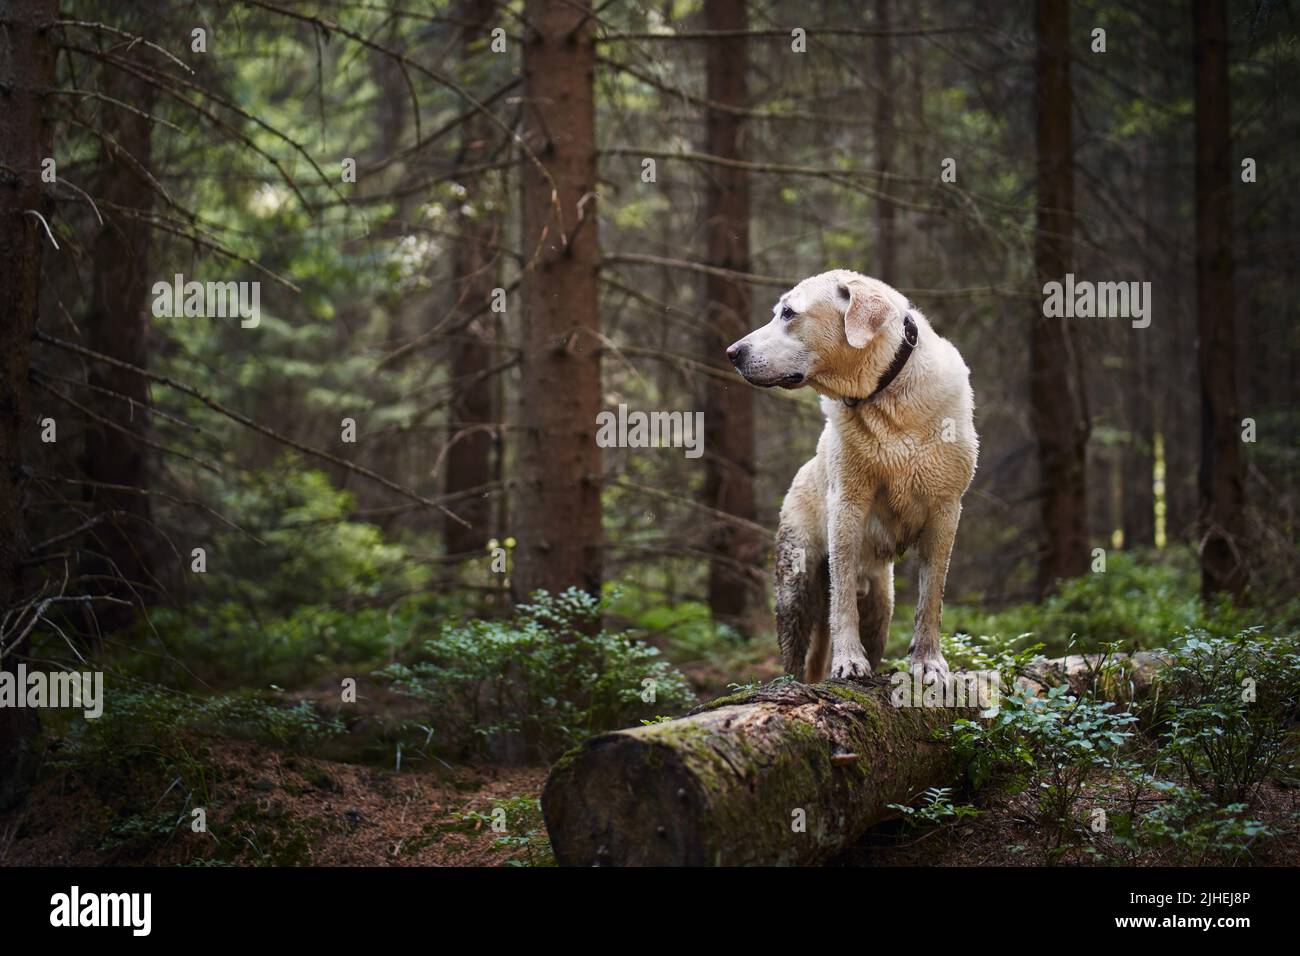 Avventura con happy dog. labrador bagnato e sporco ritrova durante l'escursione nella foresta profonda. Foto Stock